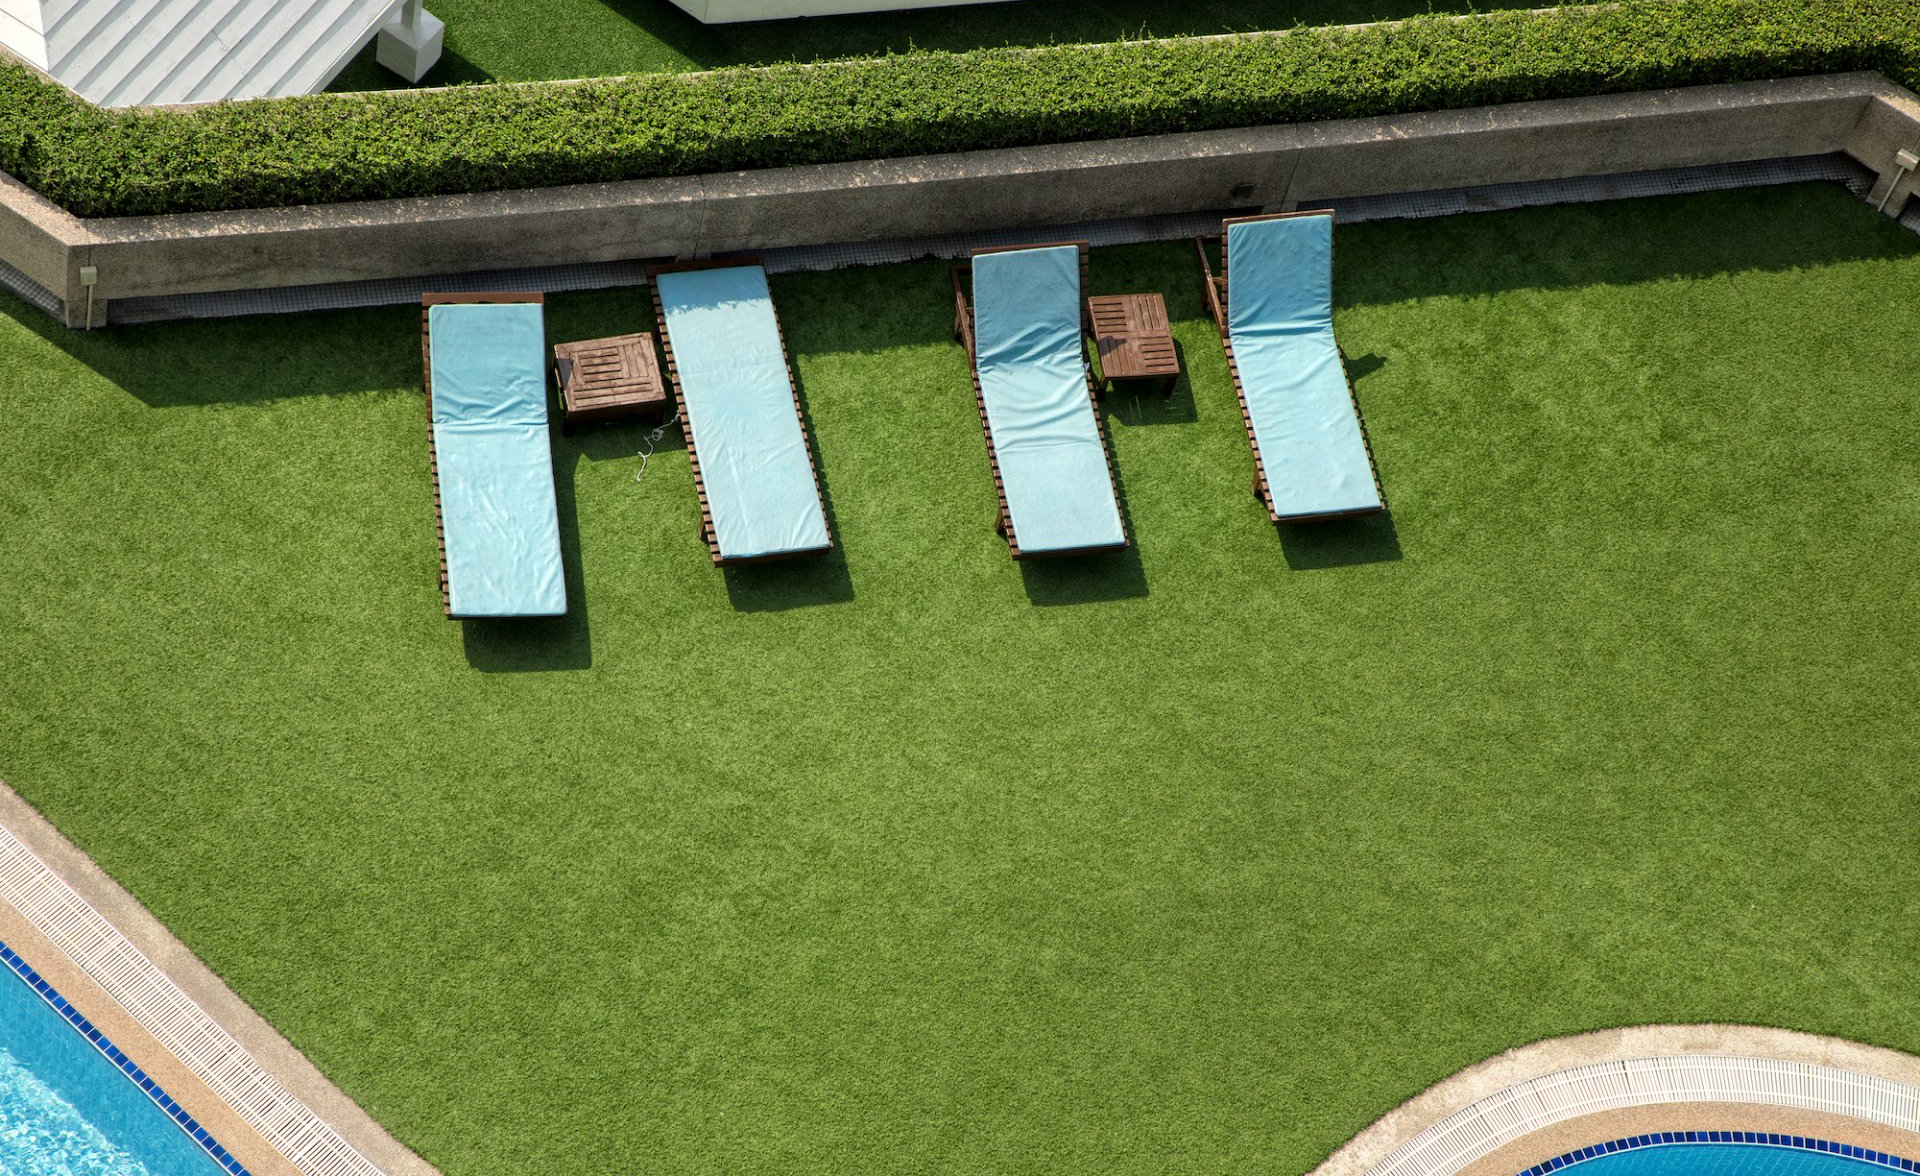 loungers around an artificial grass pool deck